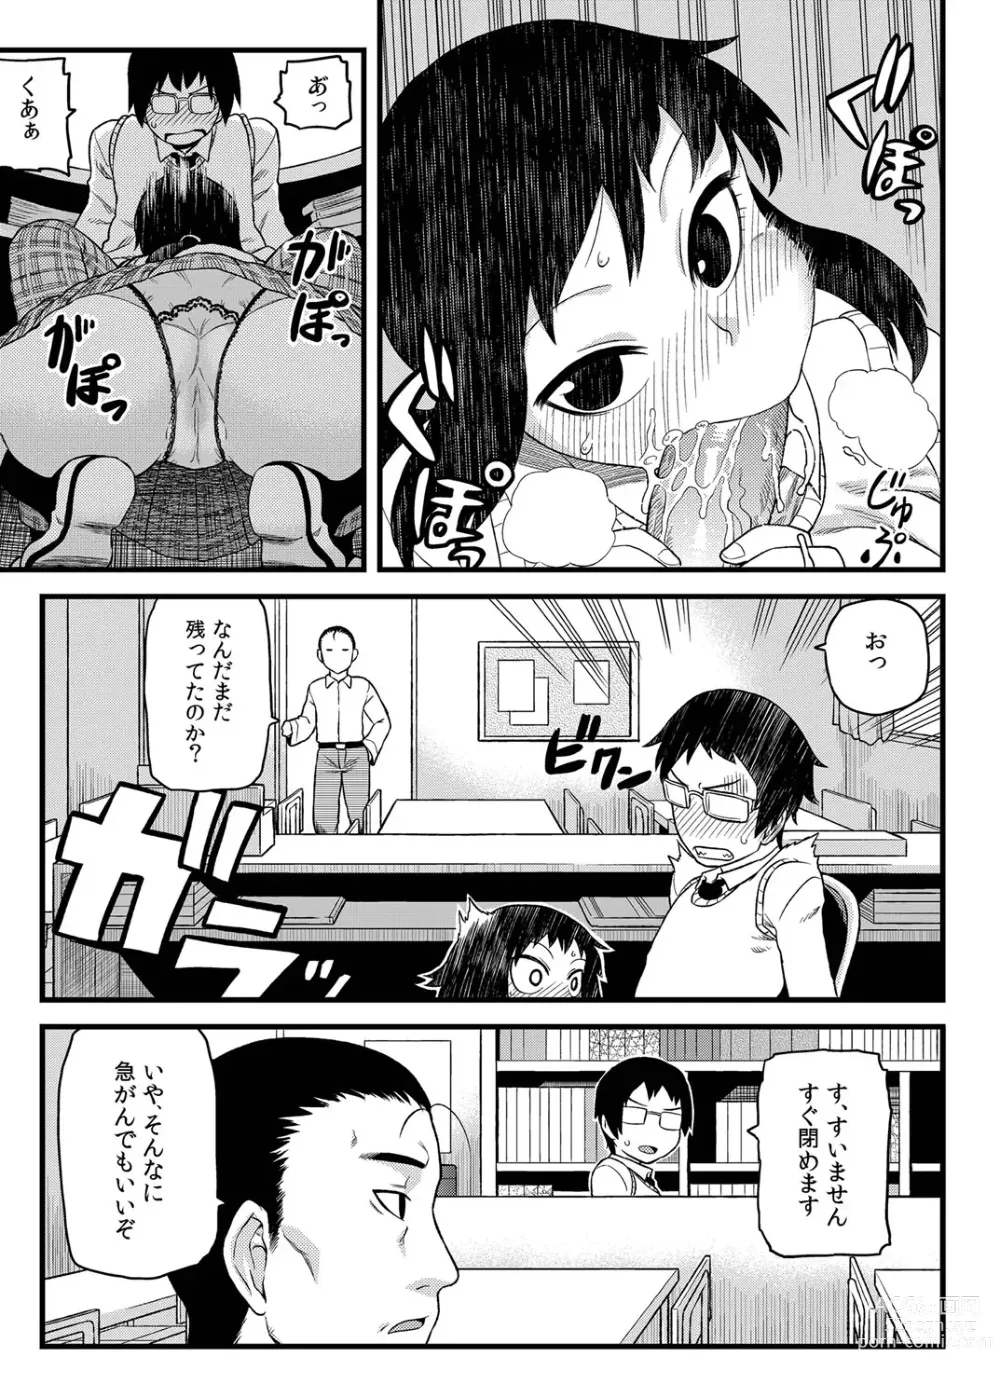 Page 8 of manga Toshoshitsu no Senpai to.